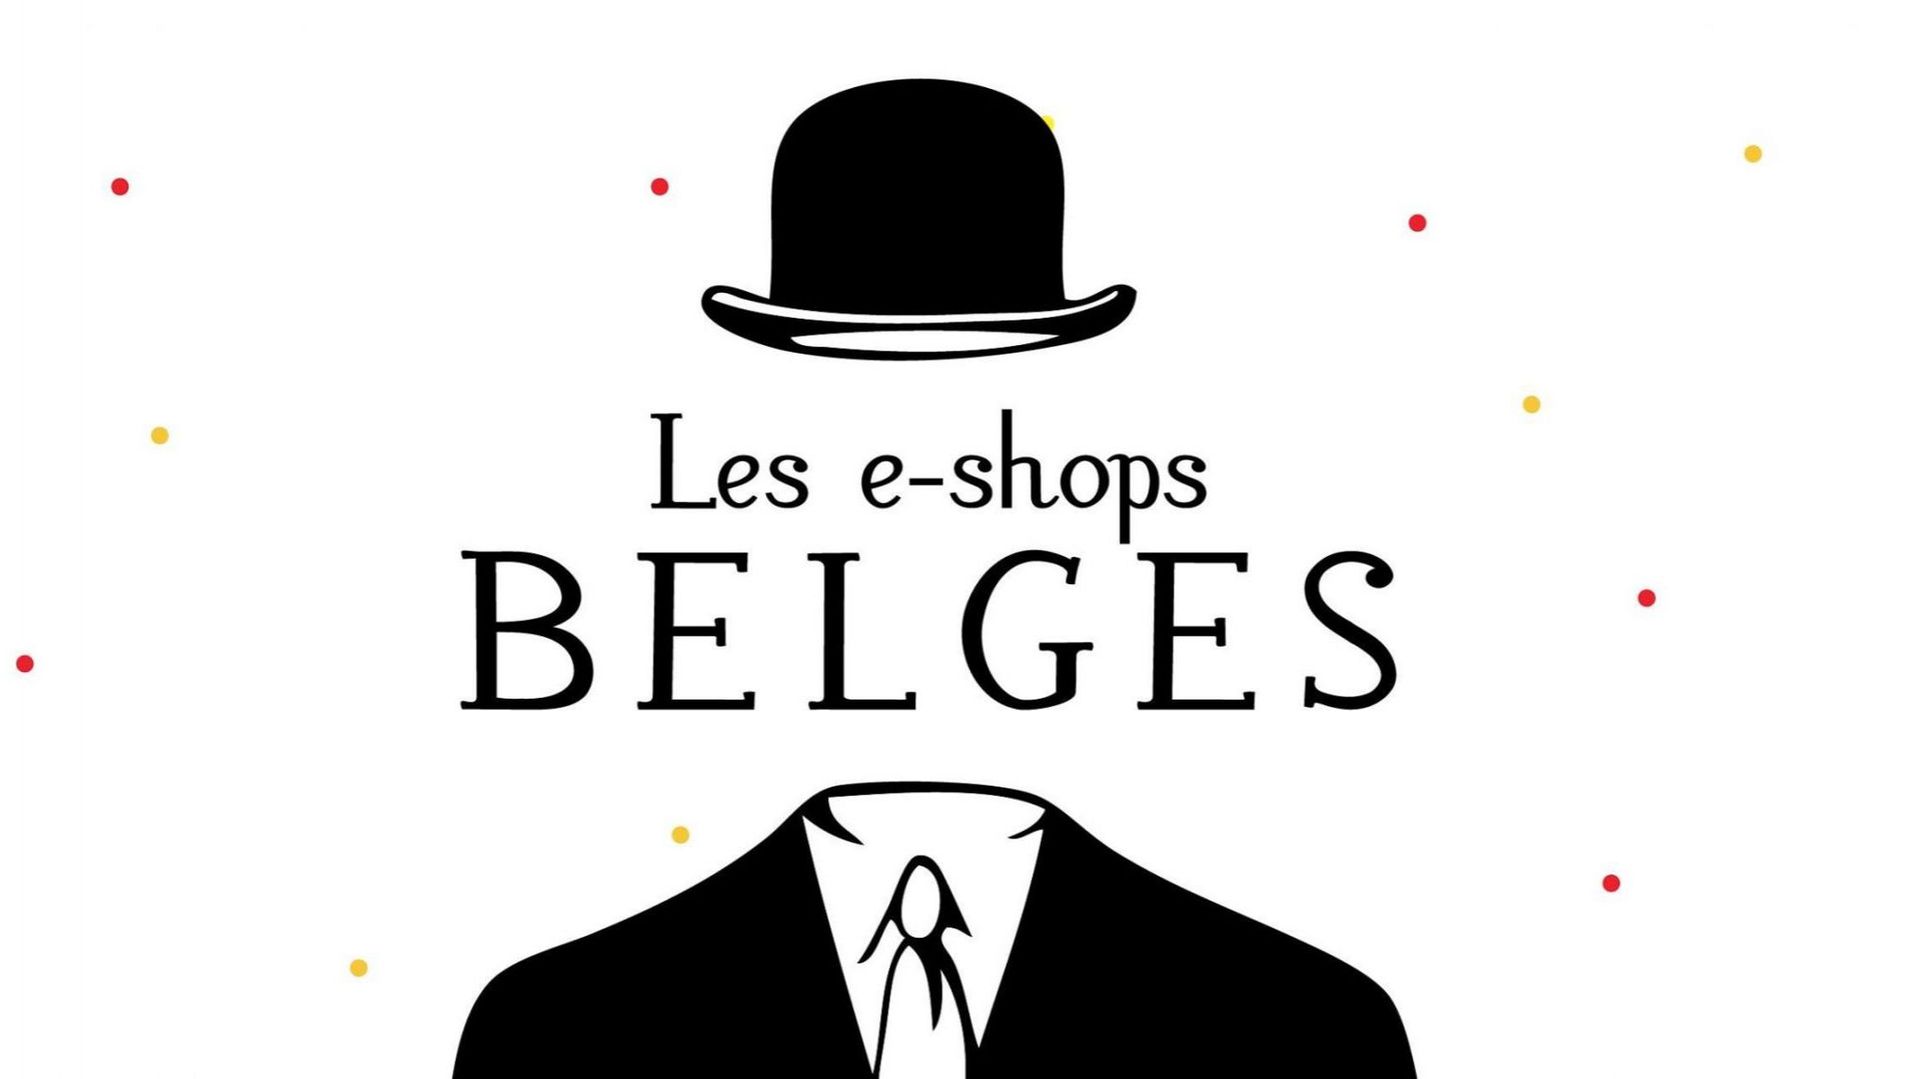 Les e-shops belges est un site recensant de centaines de boutiques en ligne 100% belges